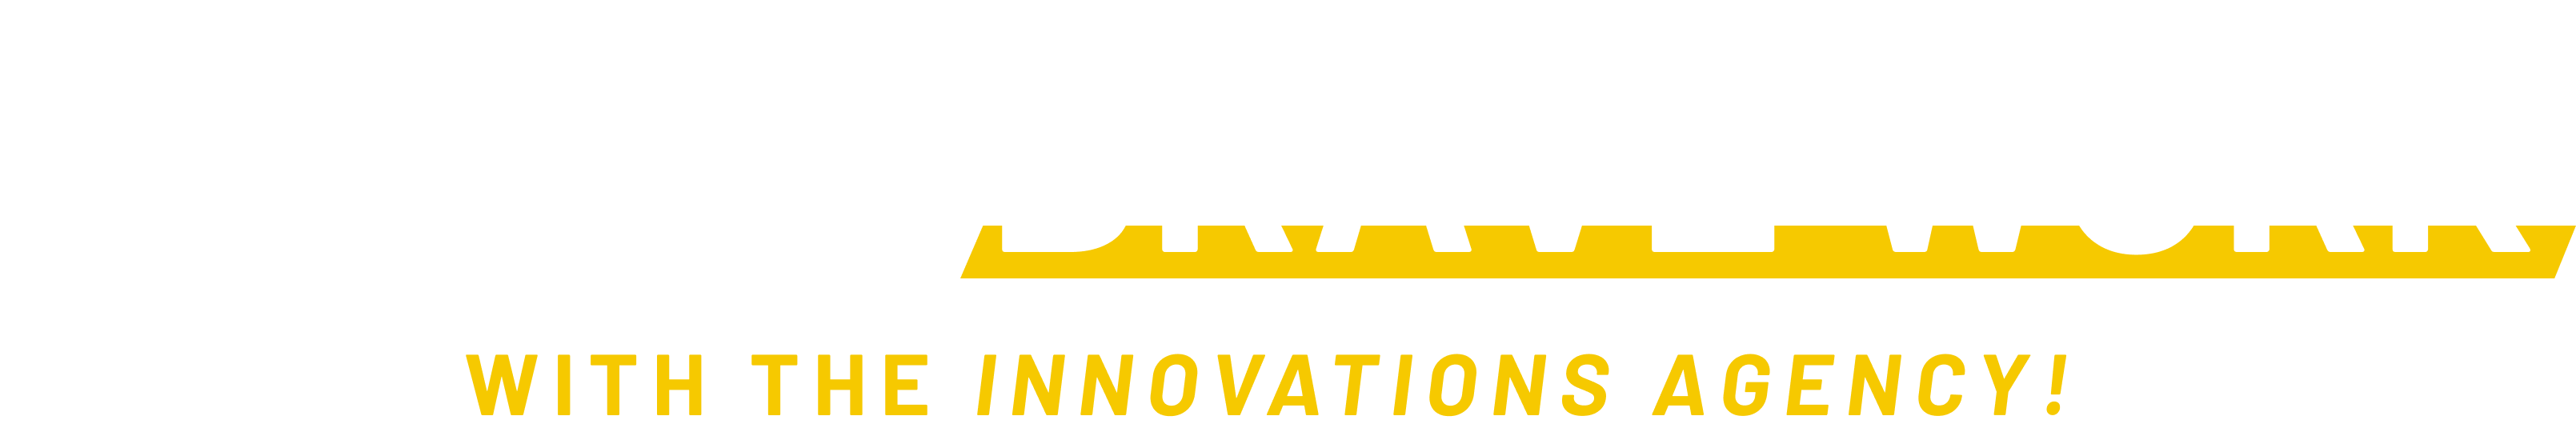 brave-work